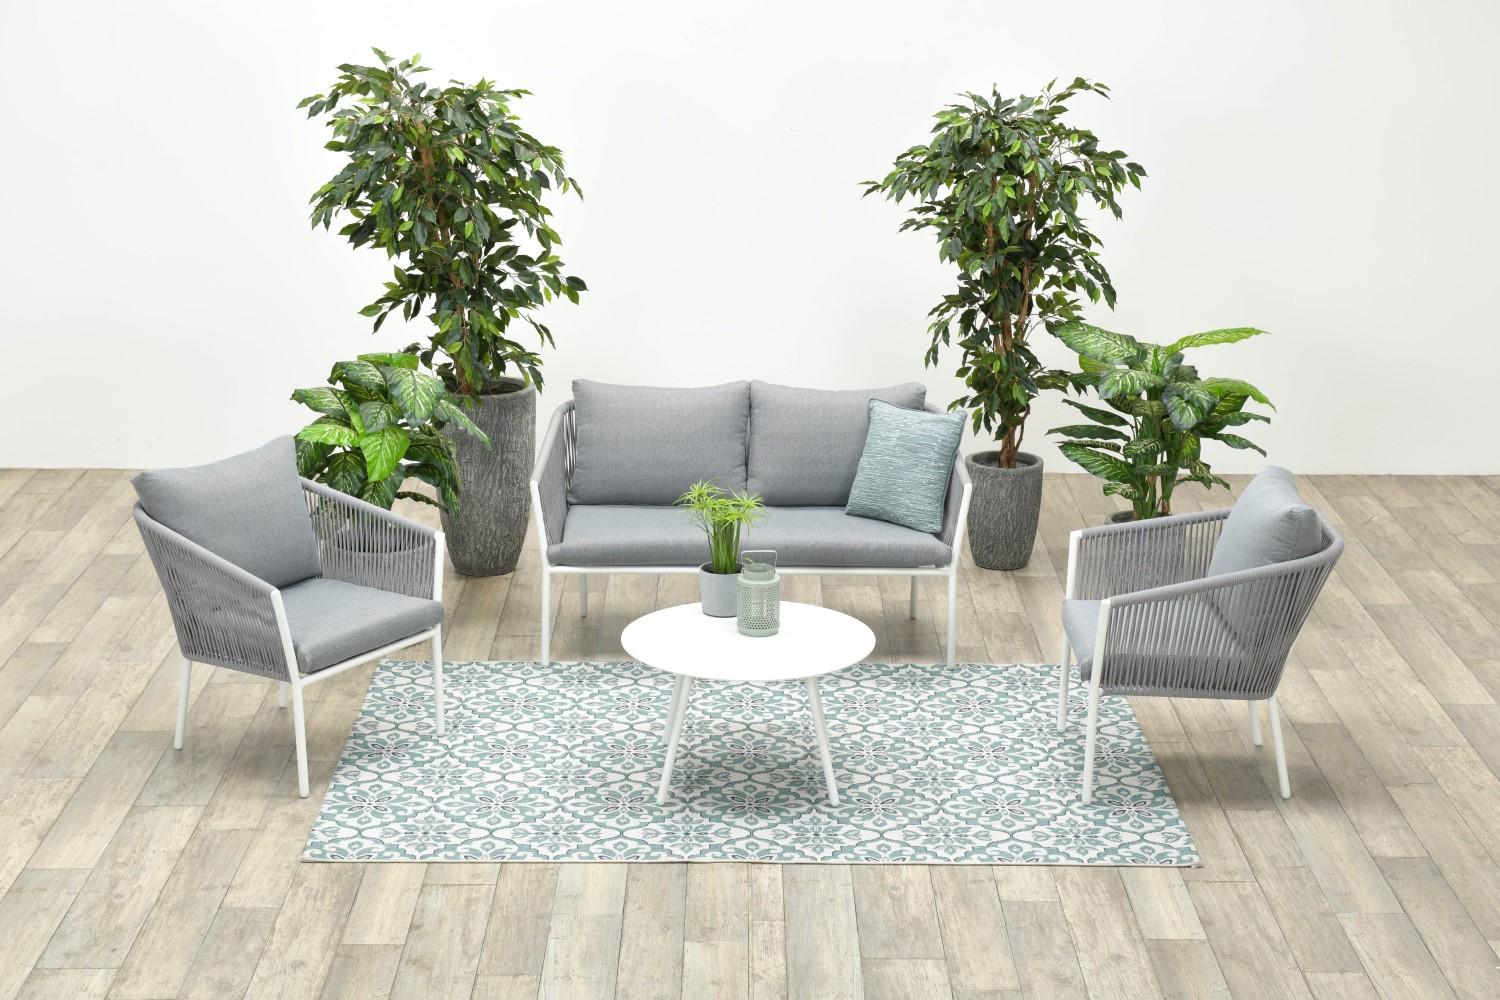 Garden Impressions Aluminium-Rope Lounge-Set "Madone" inkl. Sofa, Sesseln, Tisch und Kissen, weiß / hellgrau Bild 1